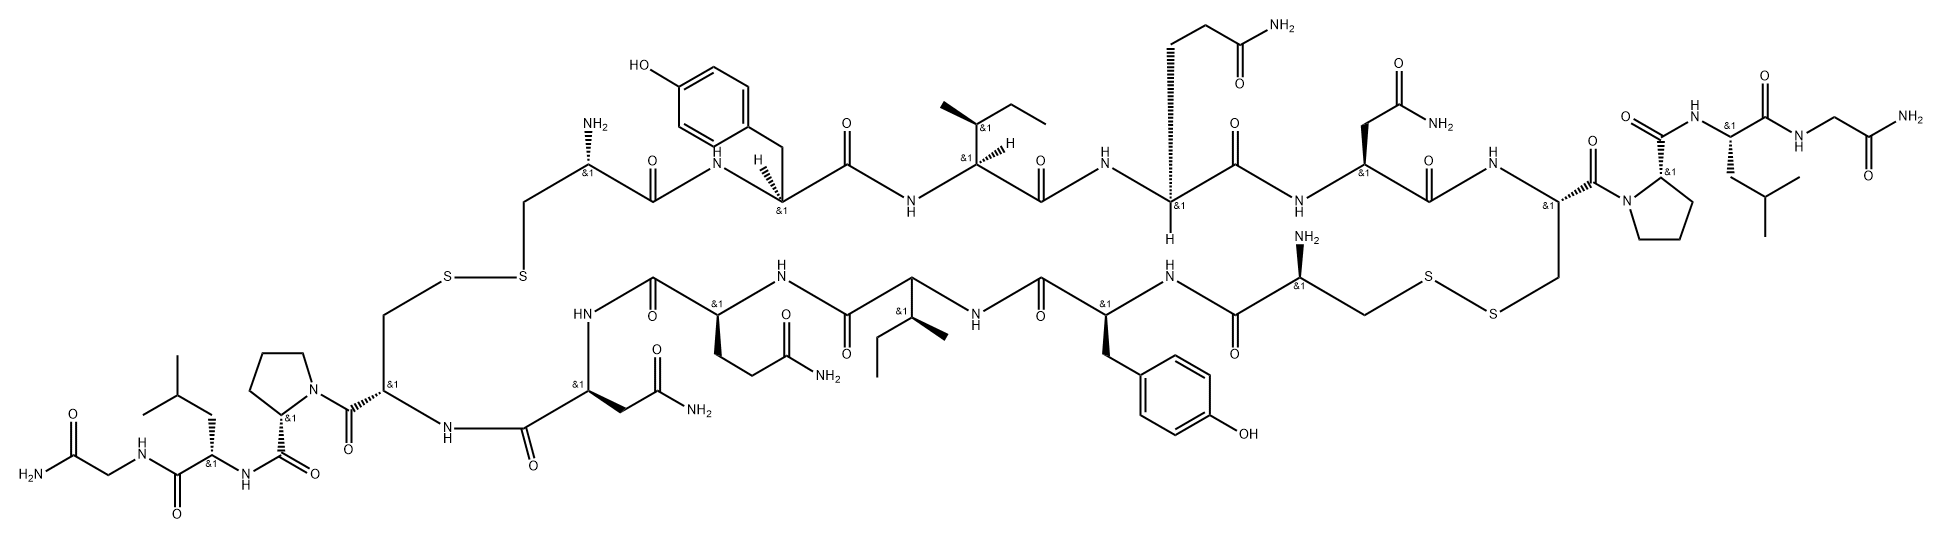 Glycinamide, L-cysteinyl-L-tyrosyl-L-isoleucyl-L-glutaminyl-L-asparaginyl-L-cysteinyl-L-prolyl-L-leucyl-, bimol. cyclic (1→6'),(6→1')-bis(disulfide) Struktur